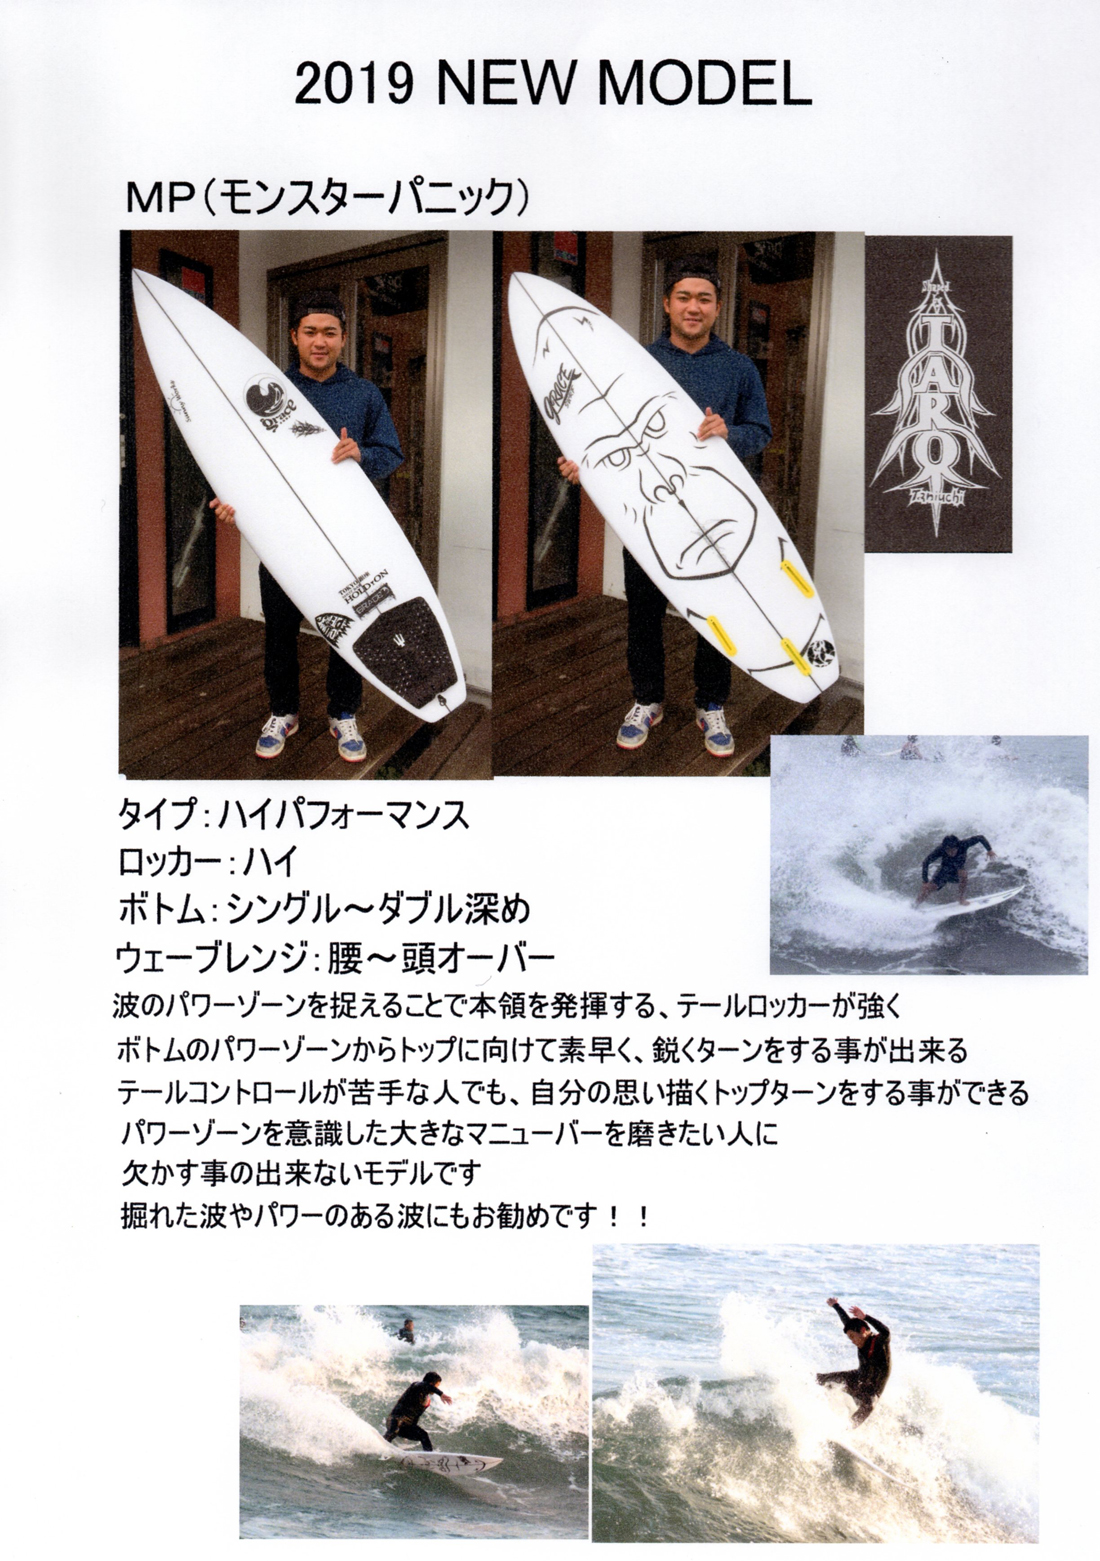 GRACE（グレース）サーフボード2019NEWモデルカタログ届きました。 | サーフィンのことなら東京・墨田区のプロショップのアルファサーフショップへ